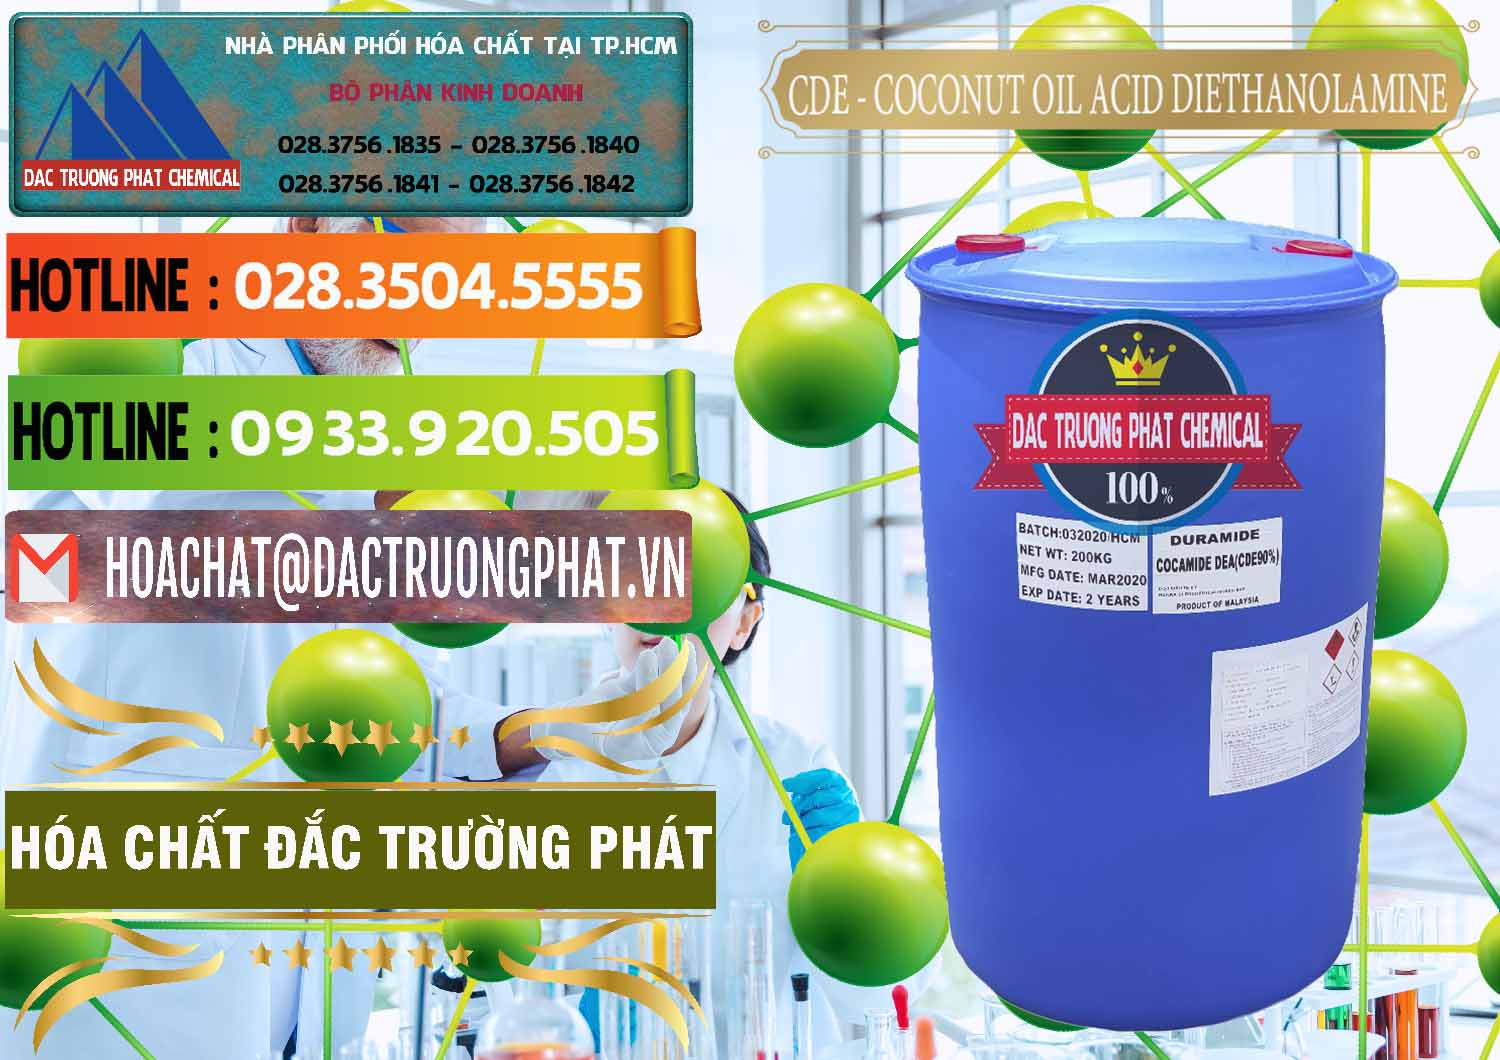 Công ty chuyên cung cấp & bán CDE - Coconut Oil Acid Diethanolamine Mã Lai Malaysia - 0311 - Nơi chuyên nhập khẩu ( phân phối ) hóa chất tại TP.HCM - cungcaphoachat.com.vn